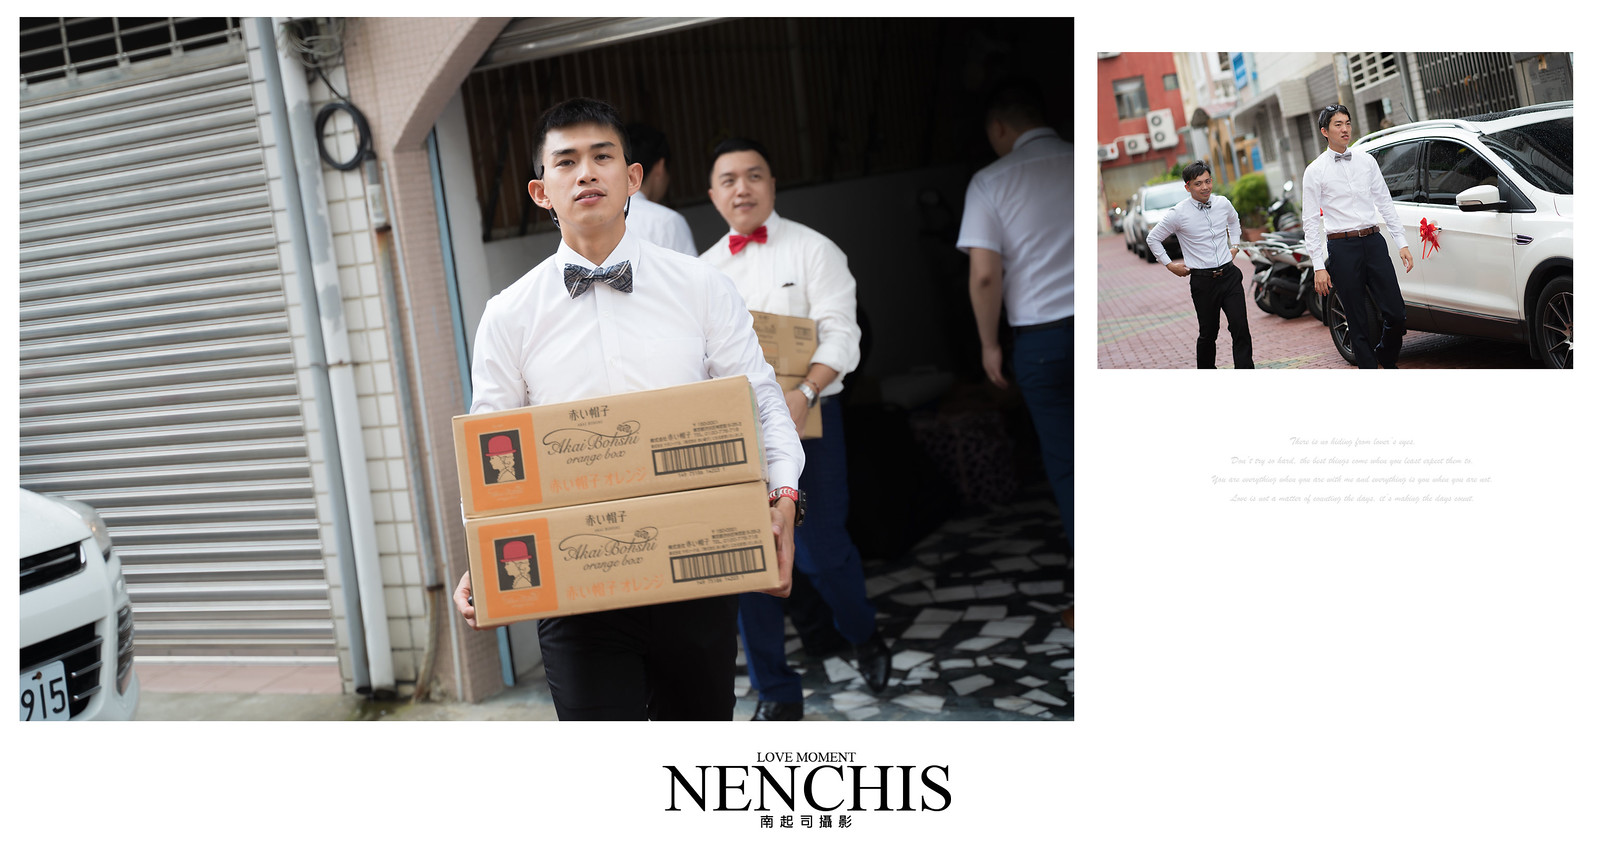 台南婚攝,婚禮攝影,飛行員婚禮,安定新吉里活動中心,Nenchis